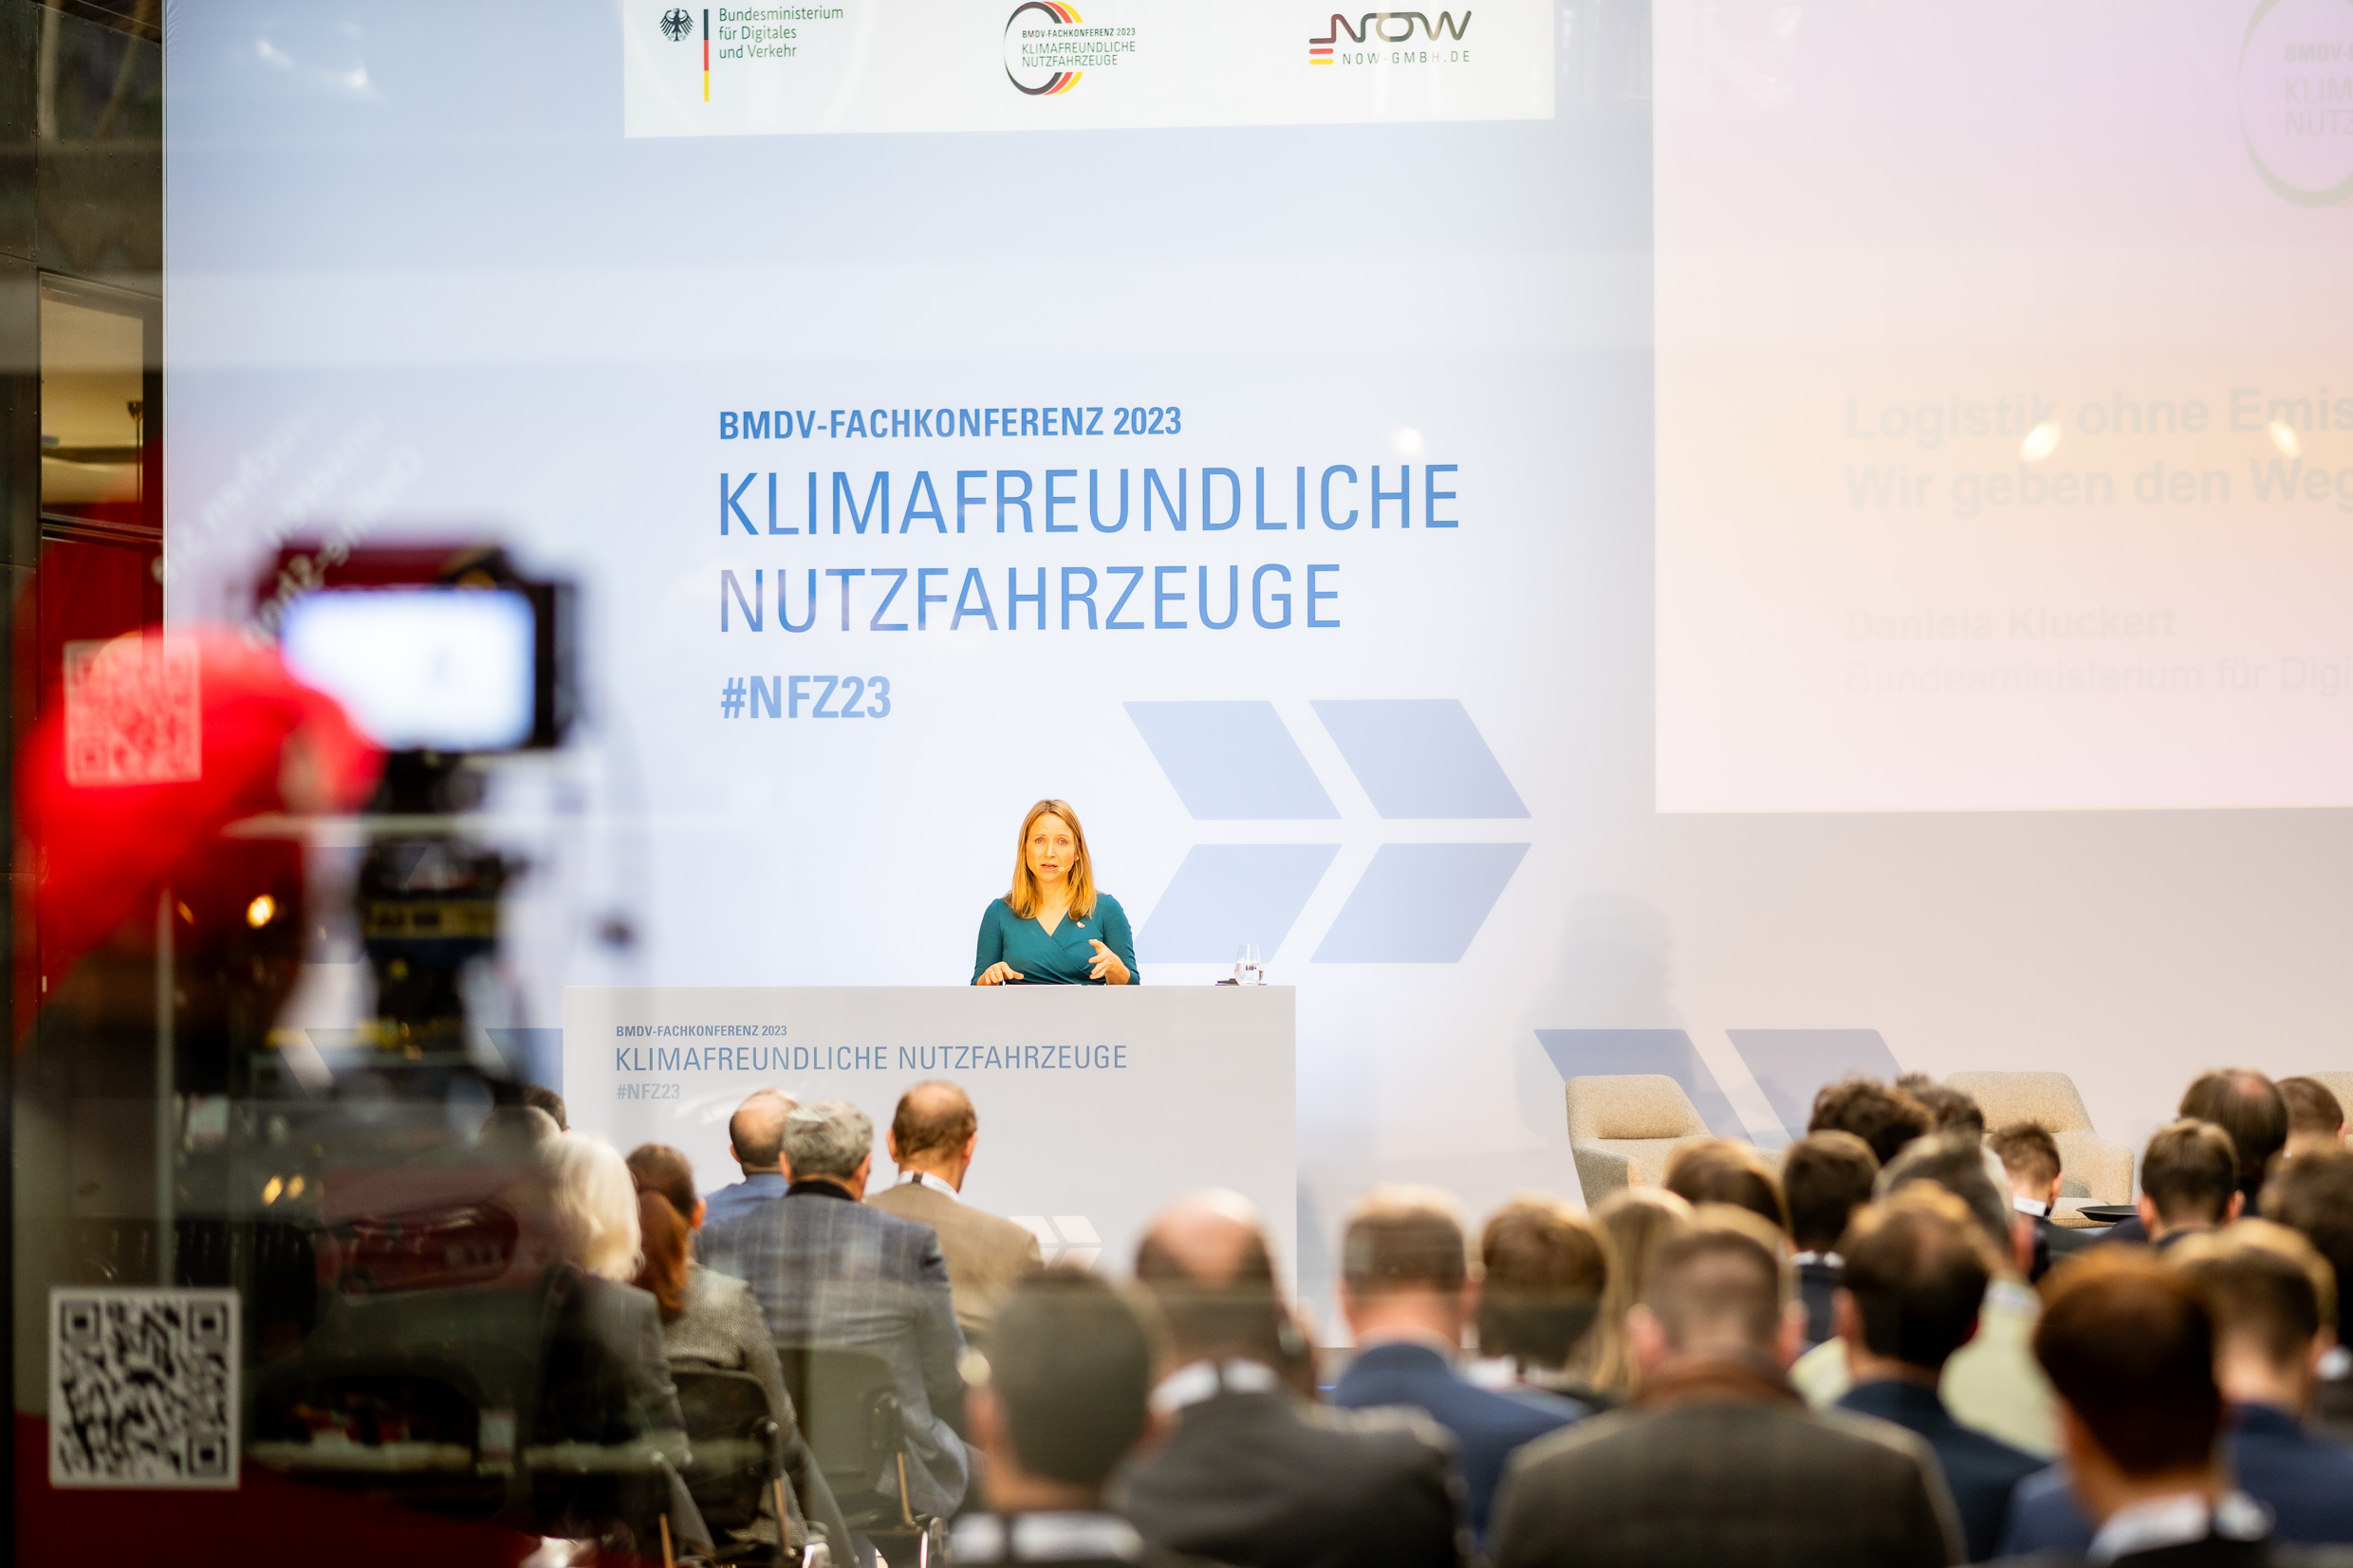 2. BMDV-Fachkonferenz Klimafreundliche Nutzfahrzeuge in Berlin eröffnet